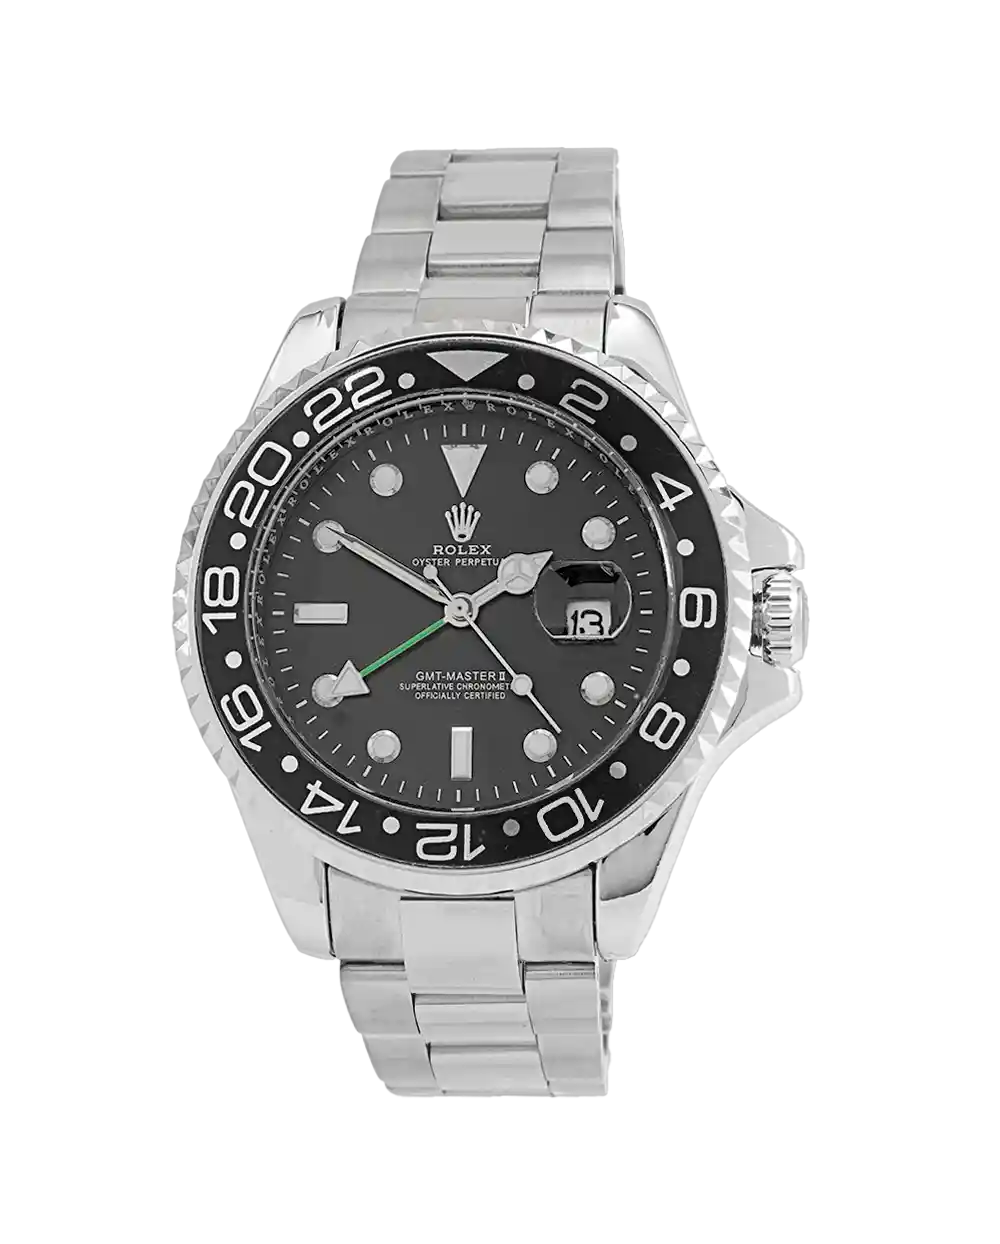 خرید ساعت مچی مردانه رولکس ROLEX طرح ساب مارین مدل 2002 SUBMARINER استیل نقره ای رنگ ثابت و صفحه مشکی، قفل رولکس بهترین قیمت و ارسال رایگان